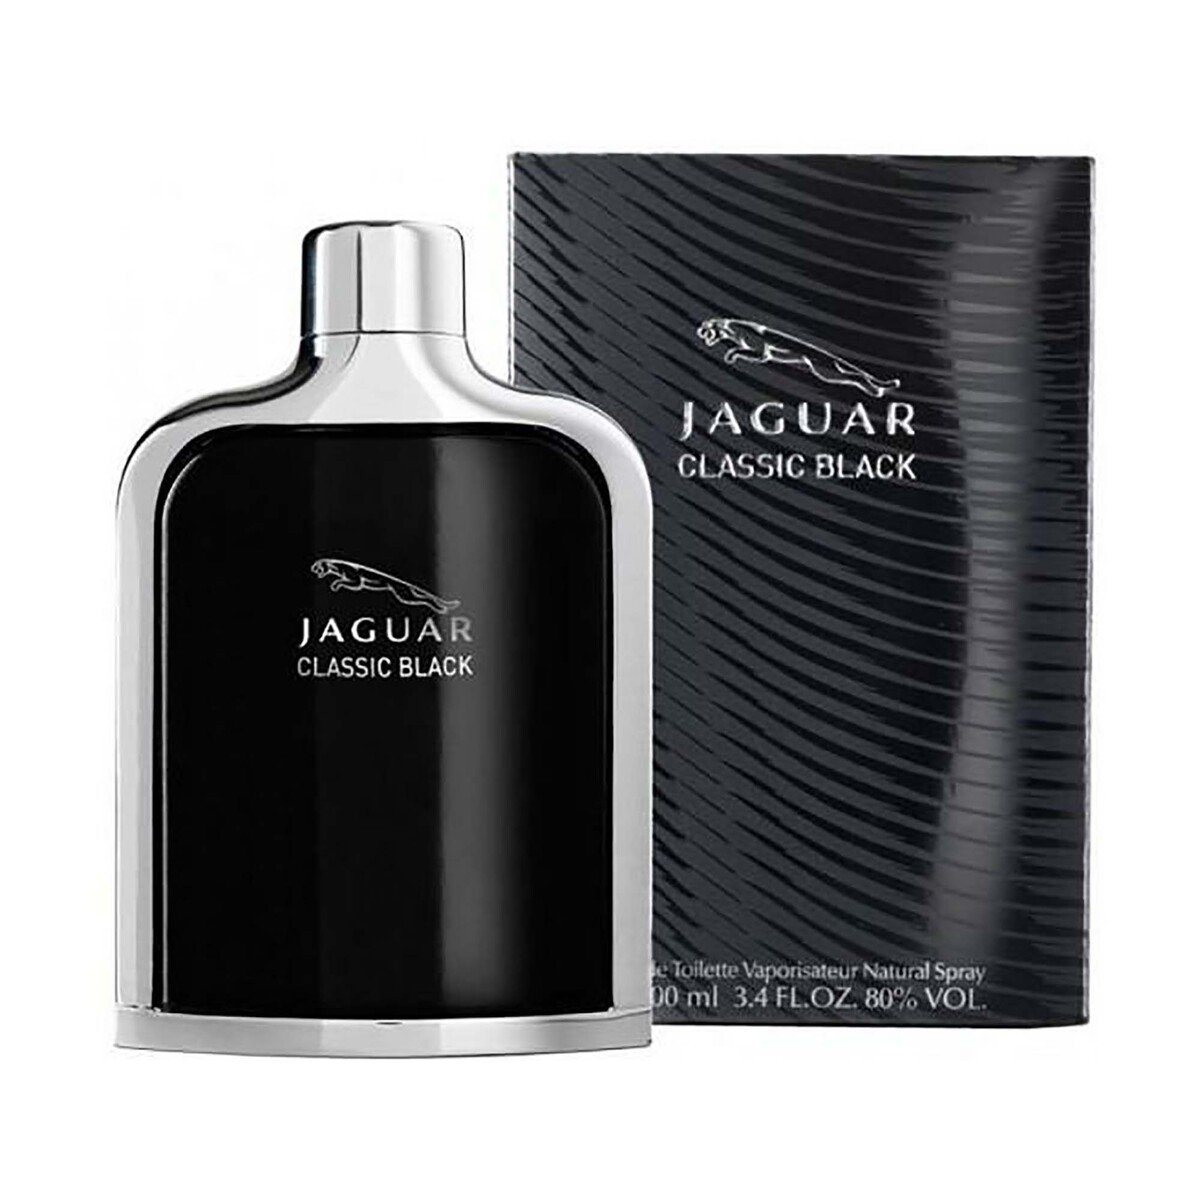 Jaguar Classic Black Eau De Toilette For Men - The Perfume Shop